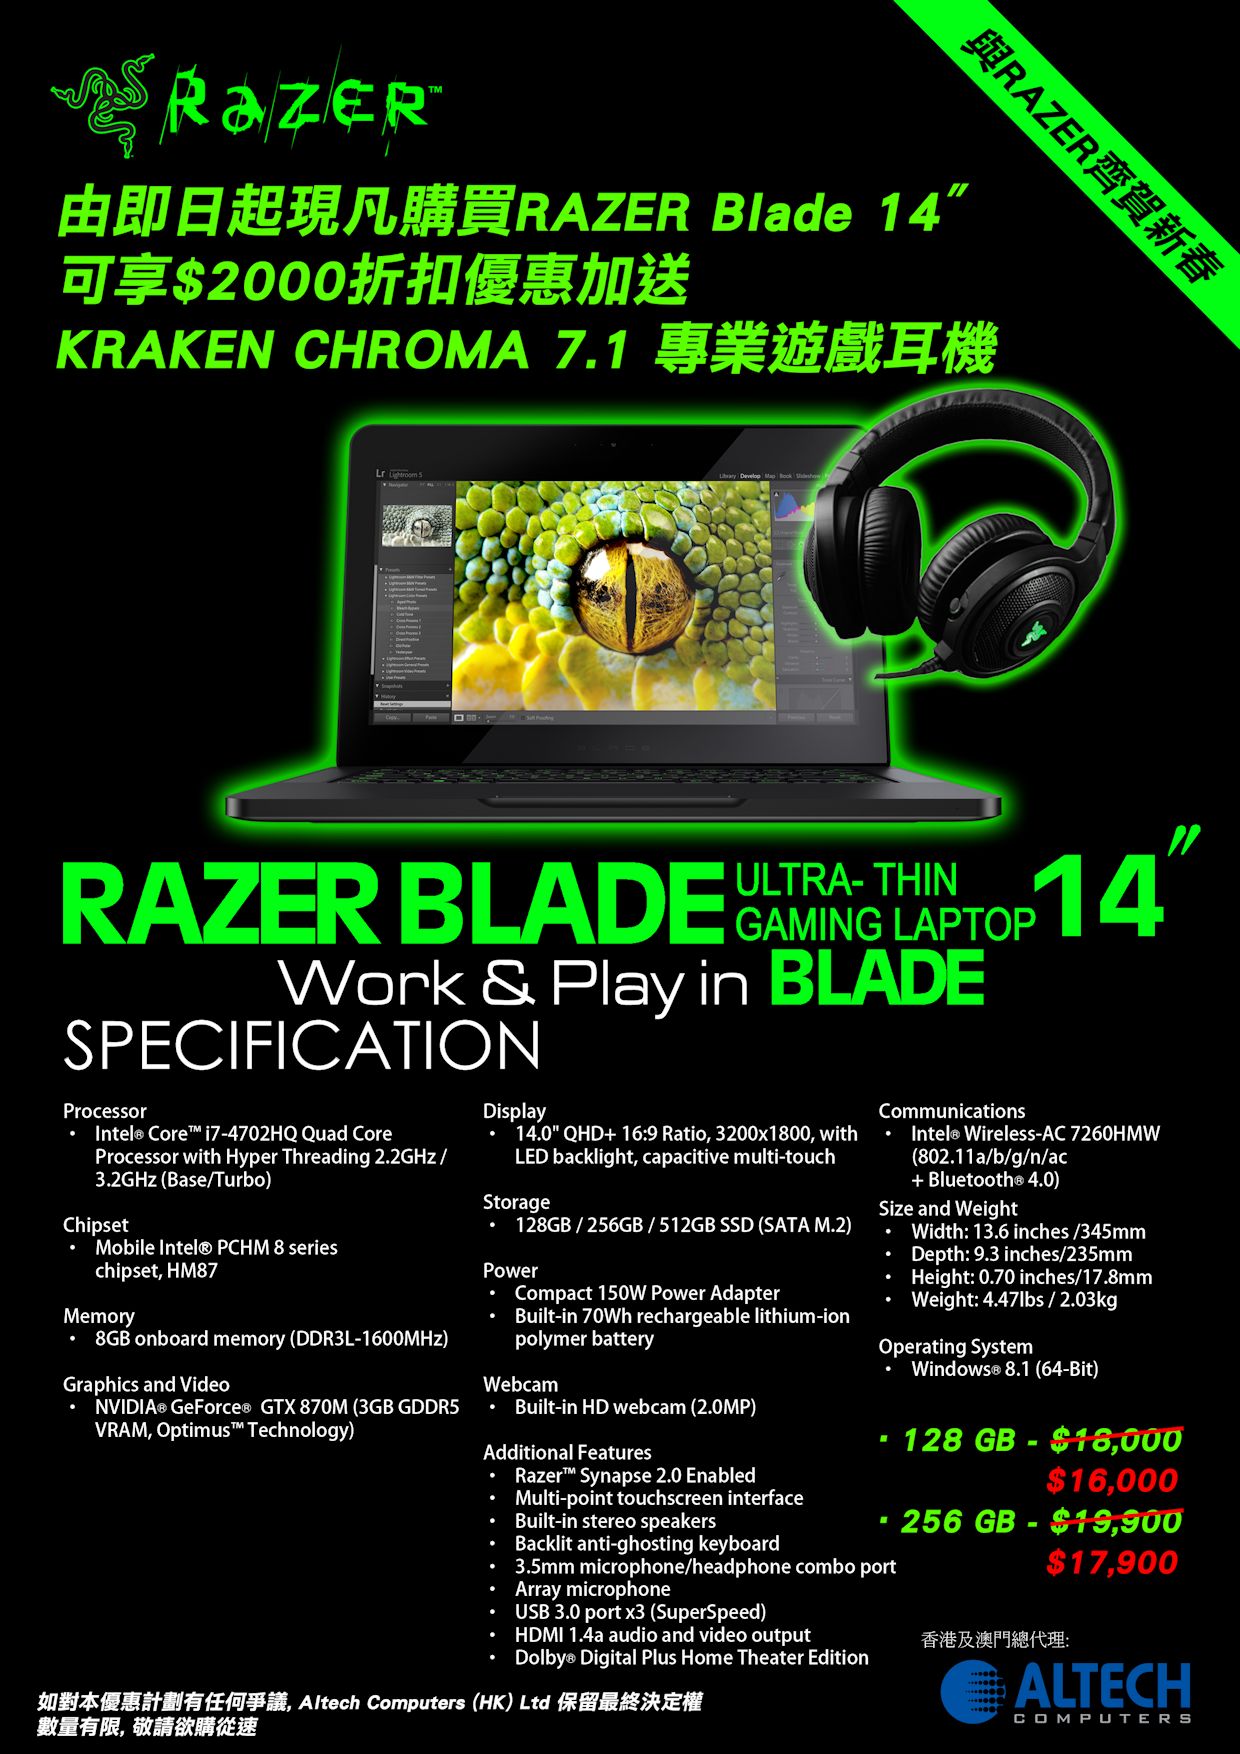 Blade Laptop 14